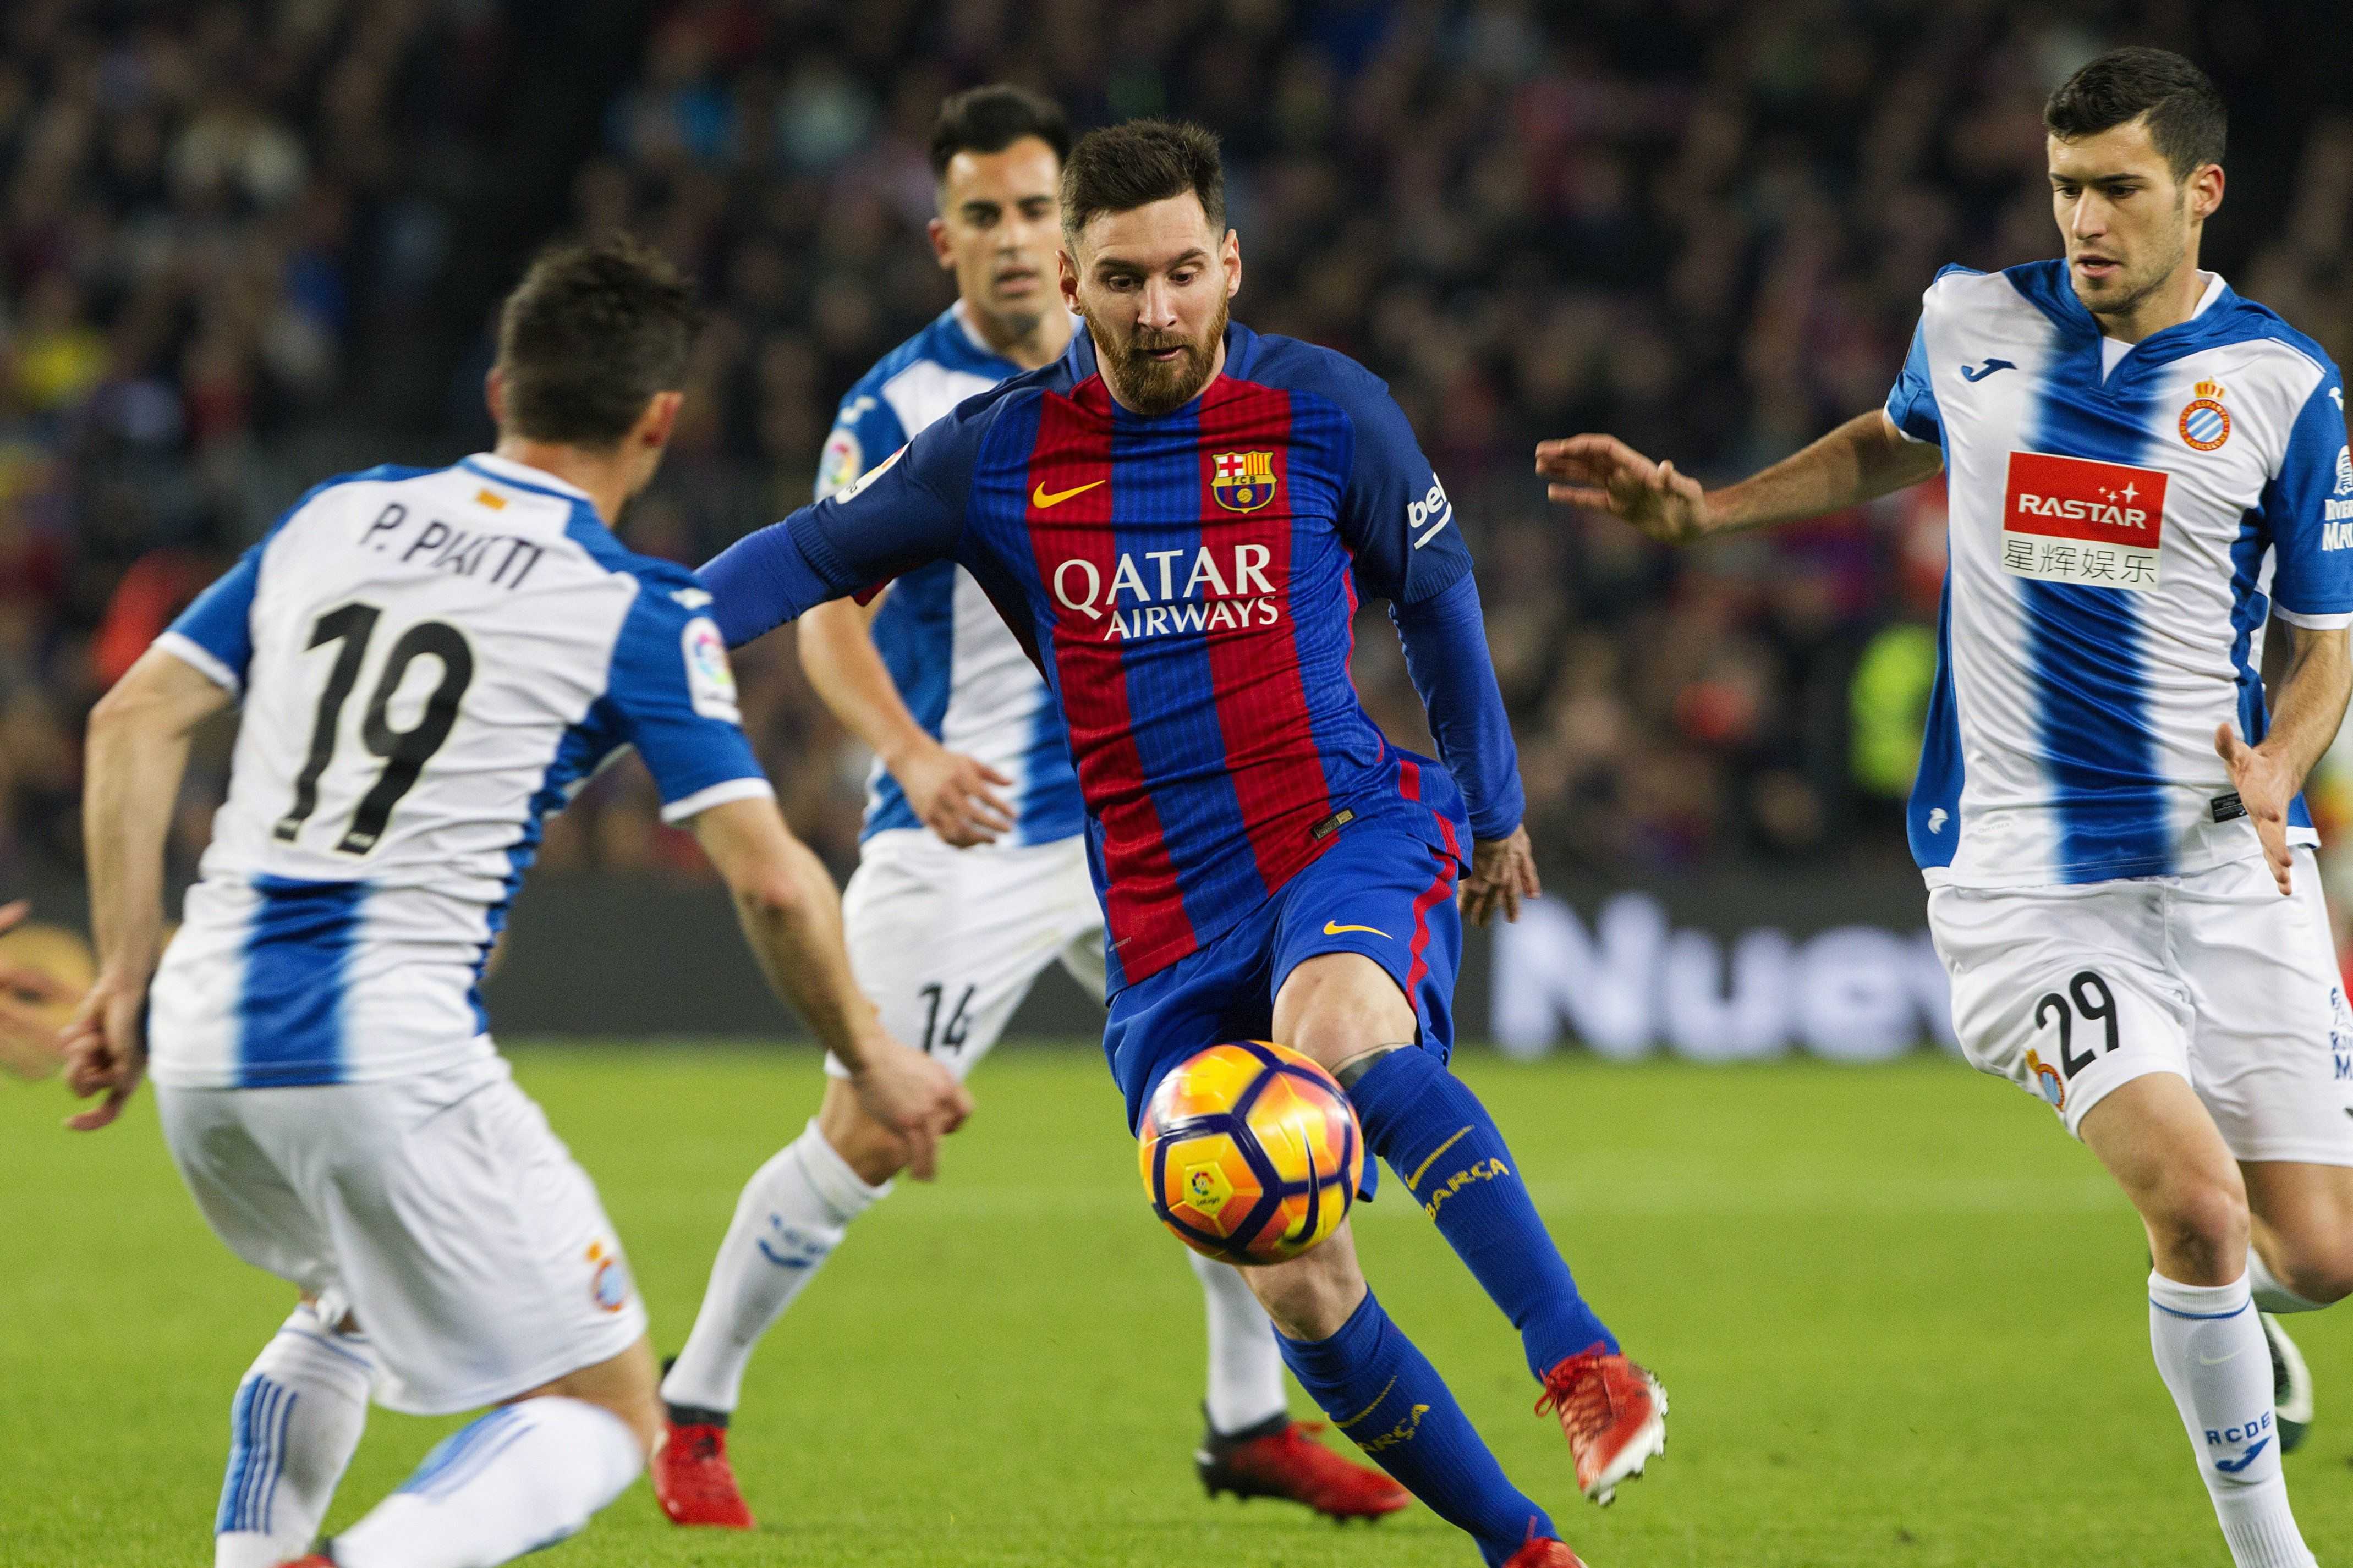 Fresco Infidelidad desconcertado La jugada de Messi contra el Espanyol, desde todos los ángulos